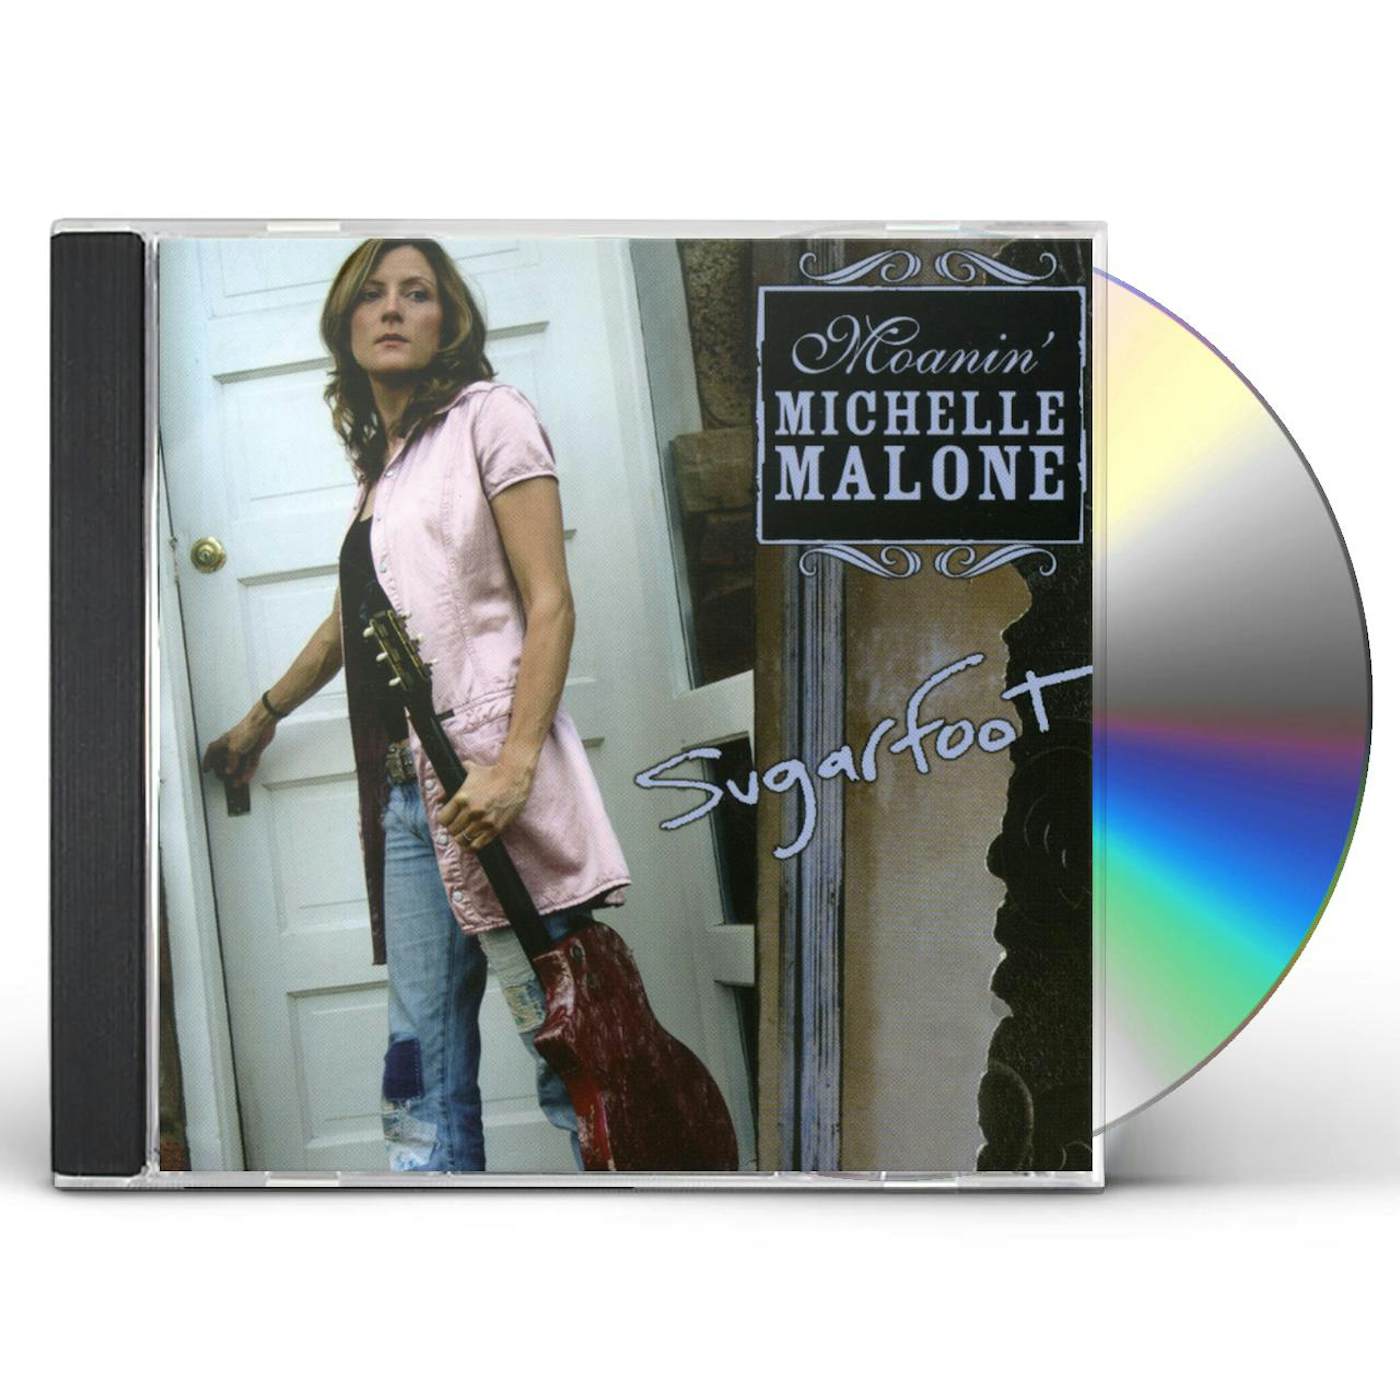 Michelle Malone SUGARFOOT CD